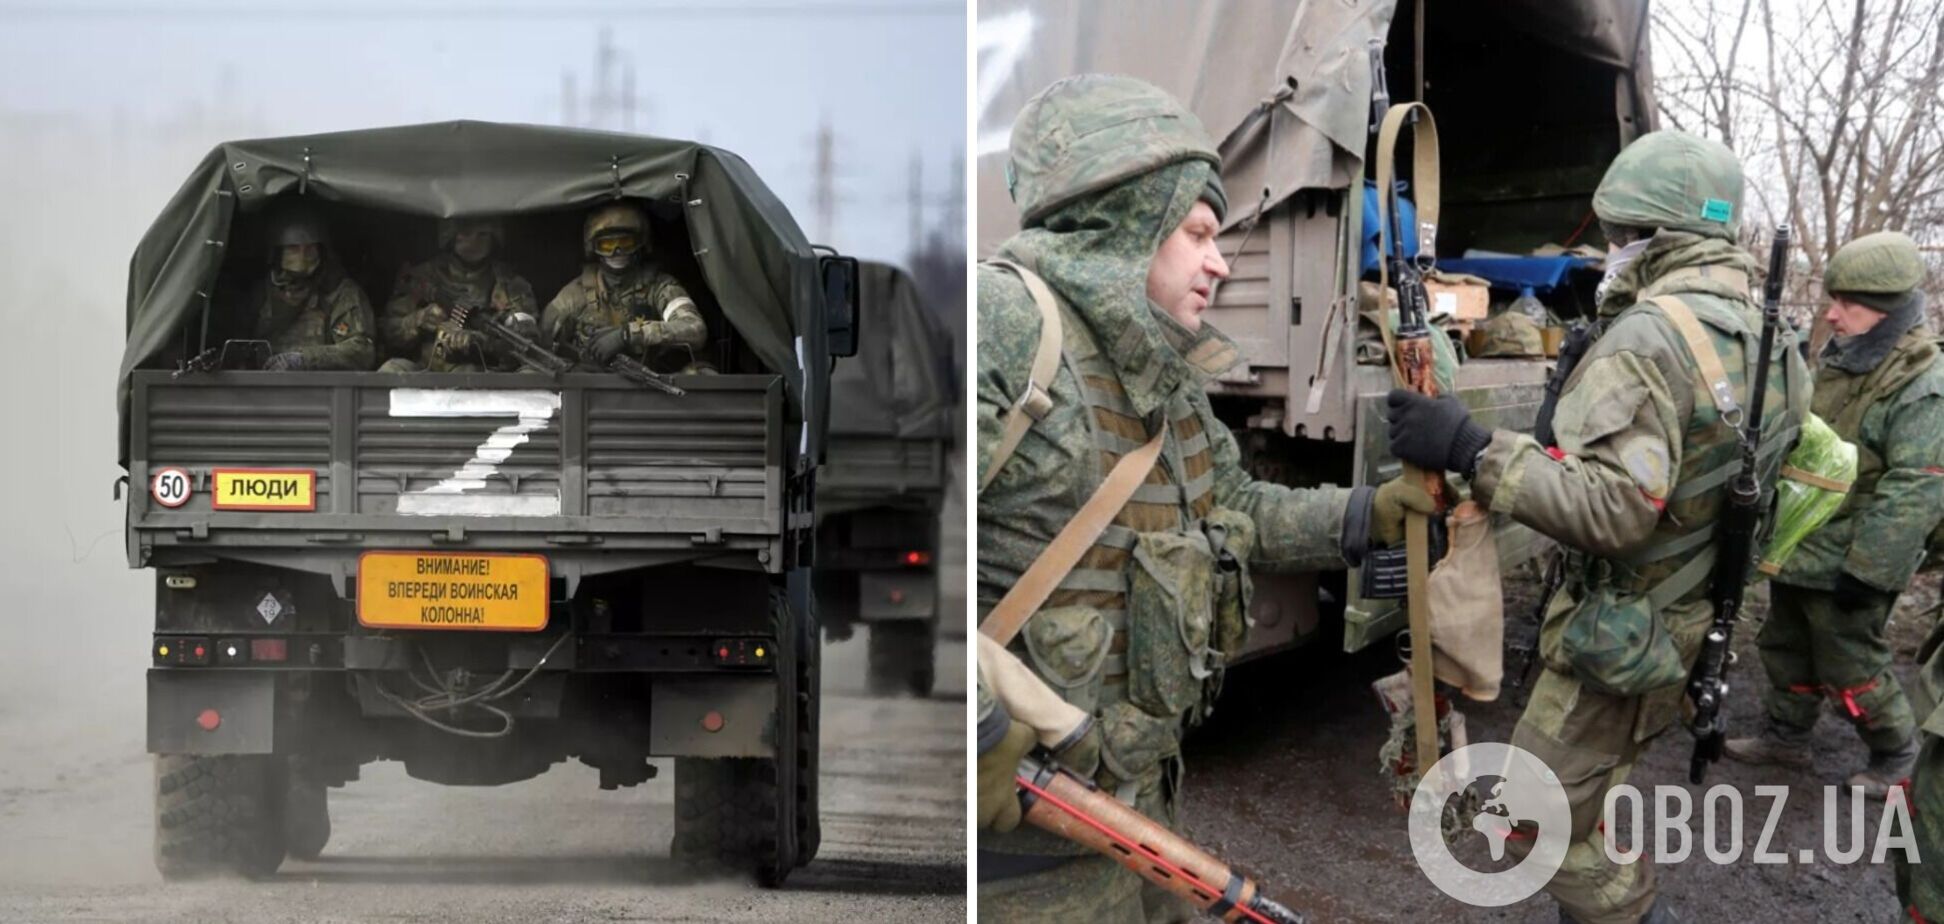 'Україну перетворили на антиРосію під тиском Заходу': в мережу виклали методичку для російських окупантів. Фото